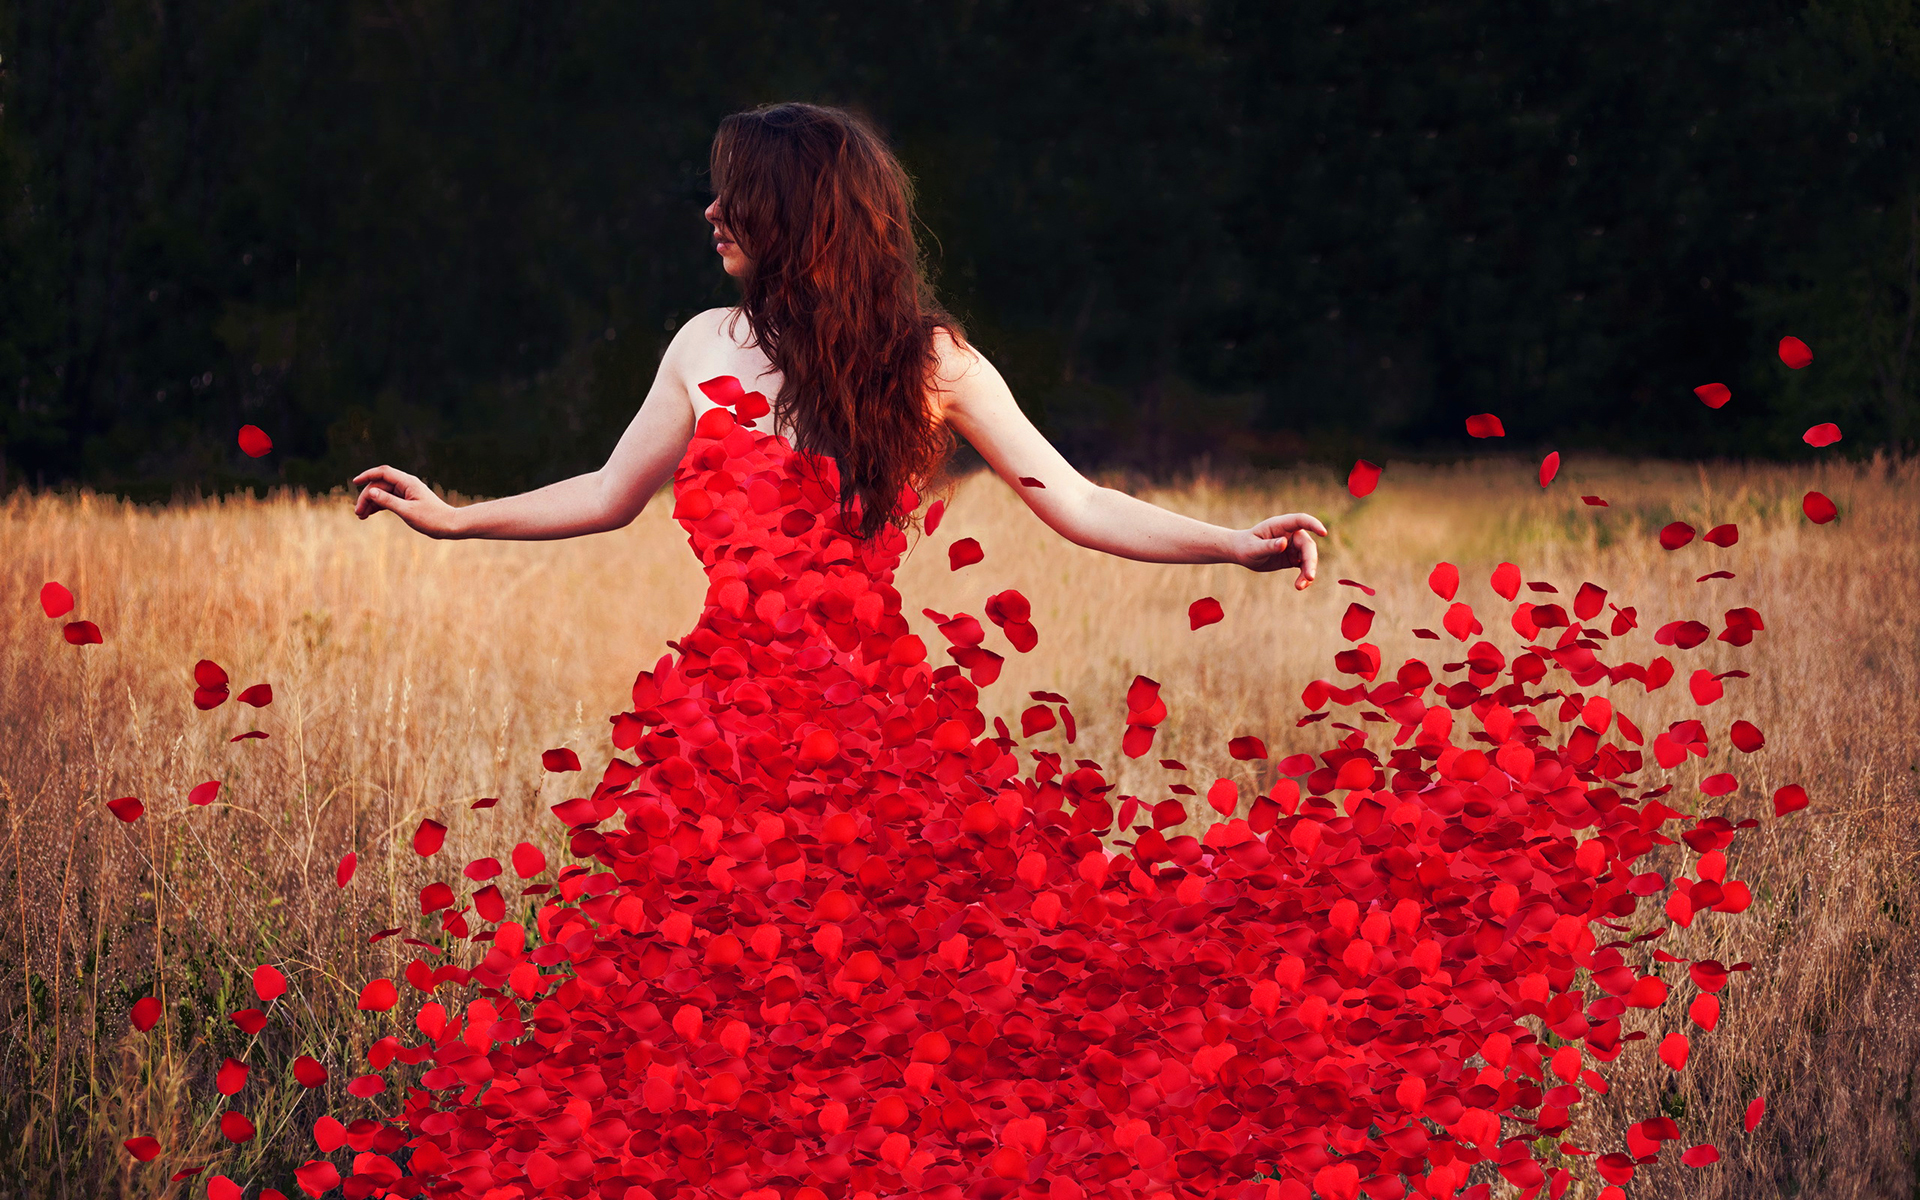 Woman flower petals dress